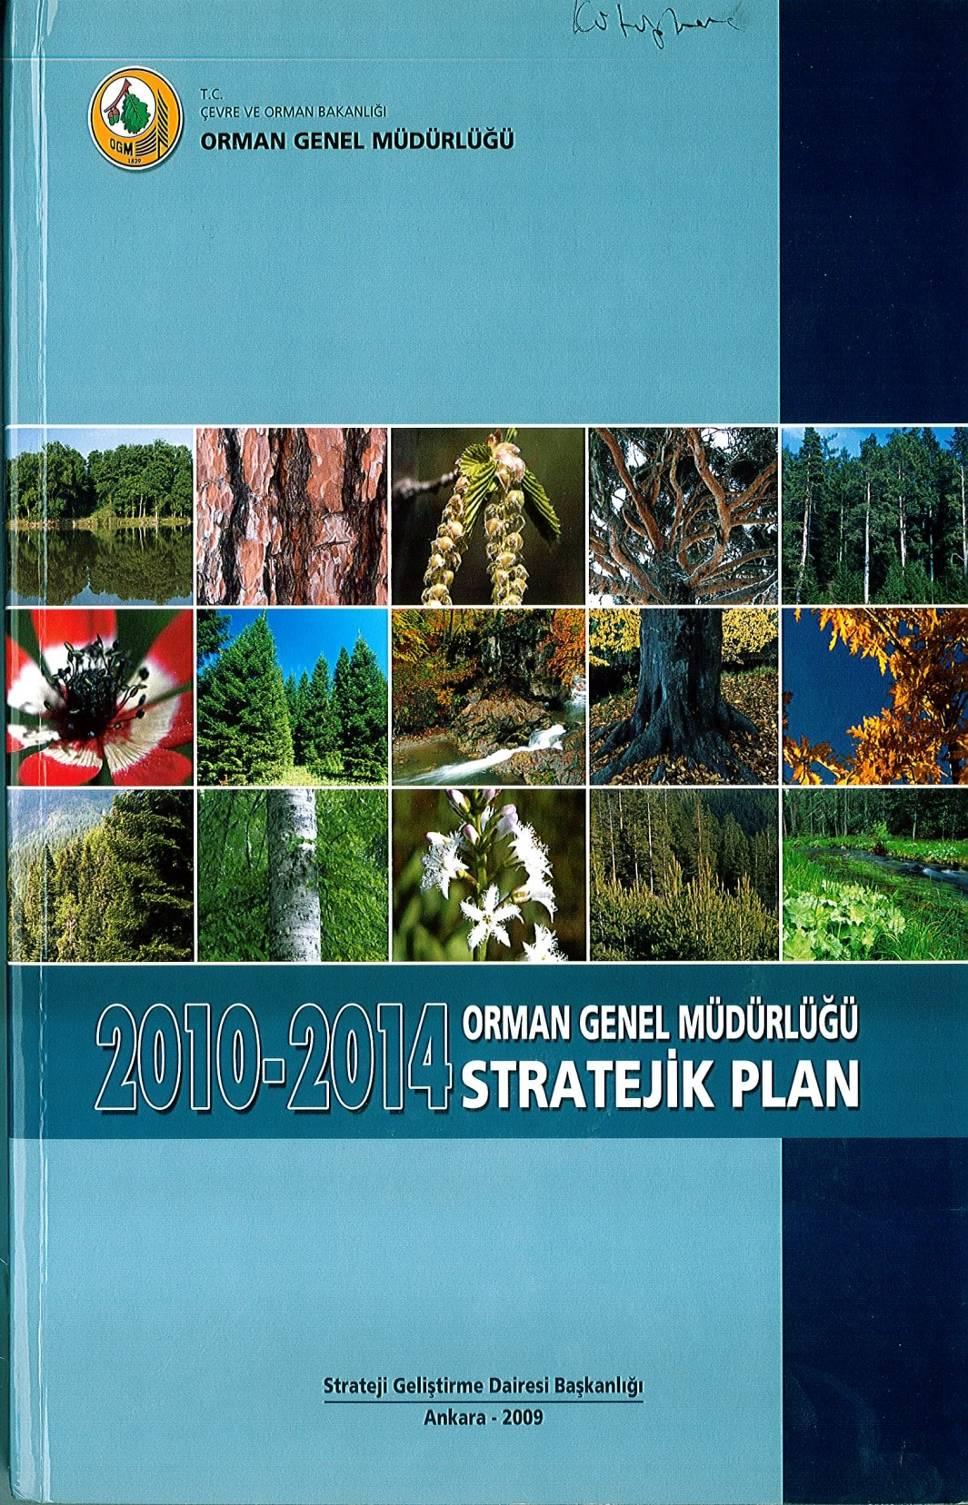 OGM stratejik planında Amaç 3: orman kaynaklarından faydalanma şeklinde ifade edilmekte ve ormanların ürettiği mal ve hizmetlerden toplumun gelişen ve değişen beklentilerini en üst düzeyde